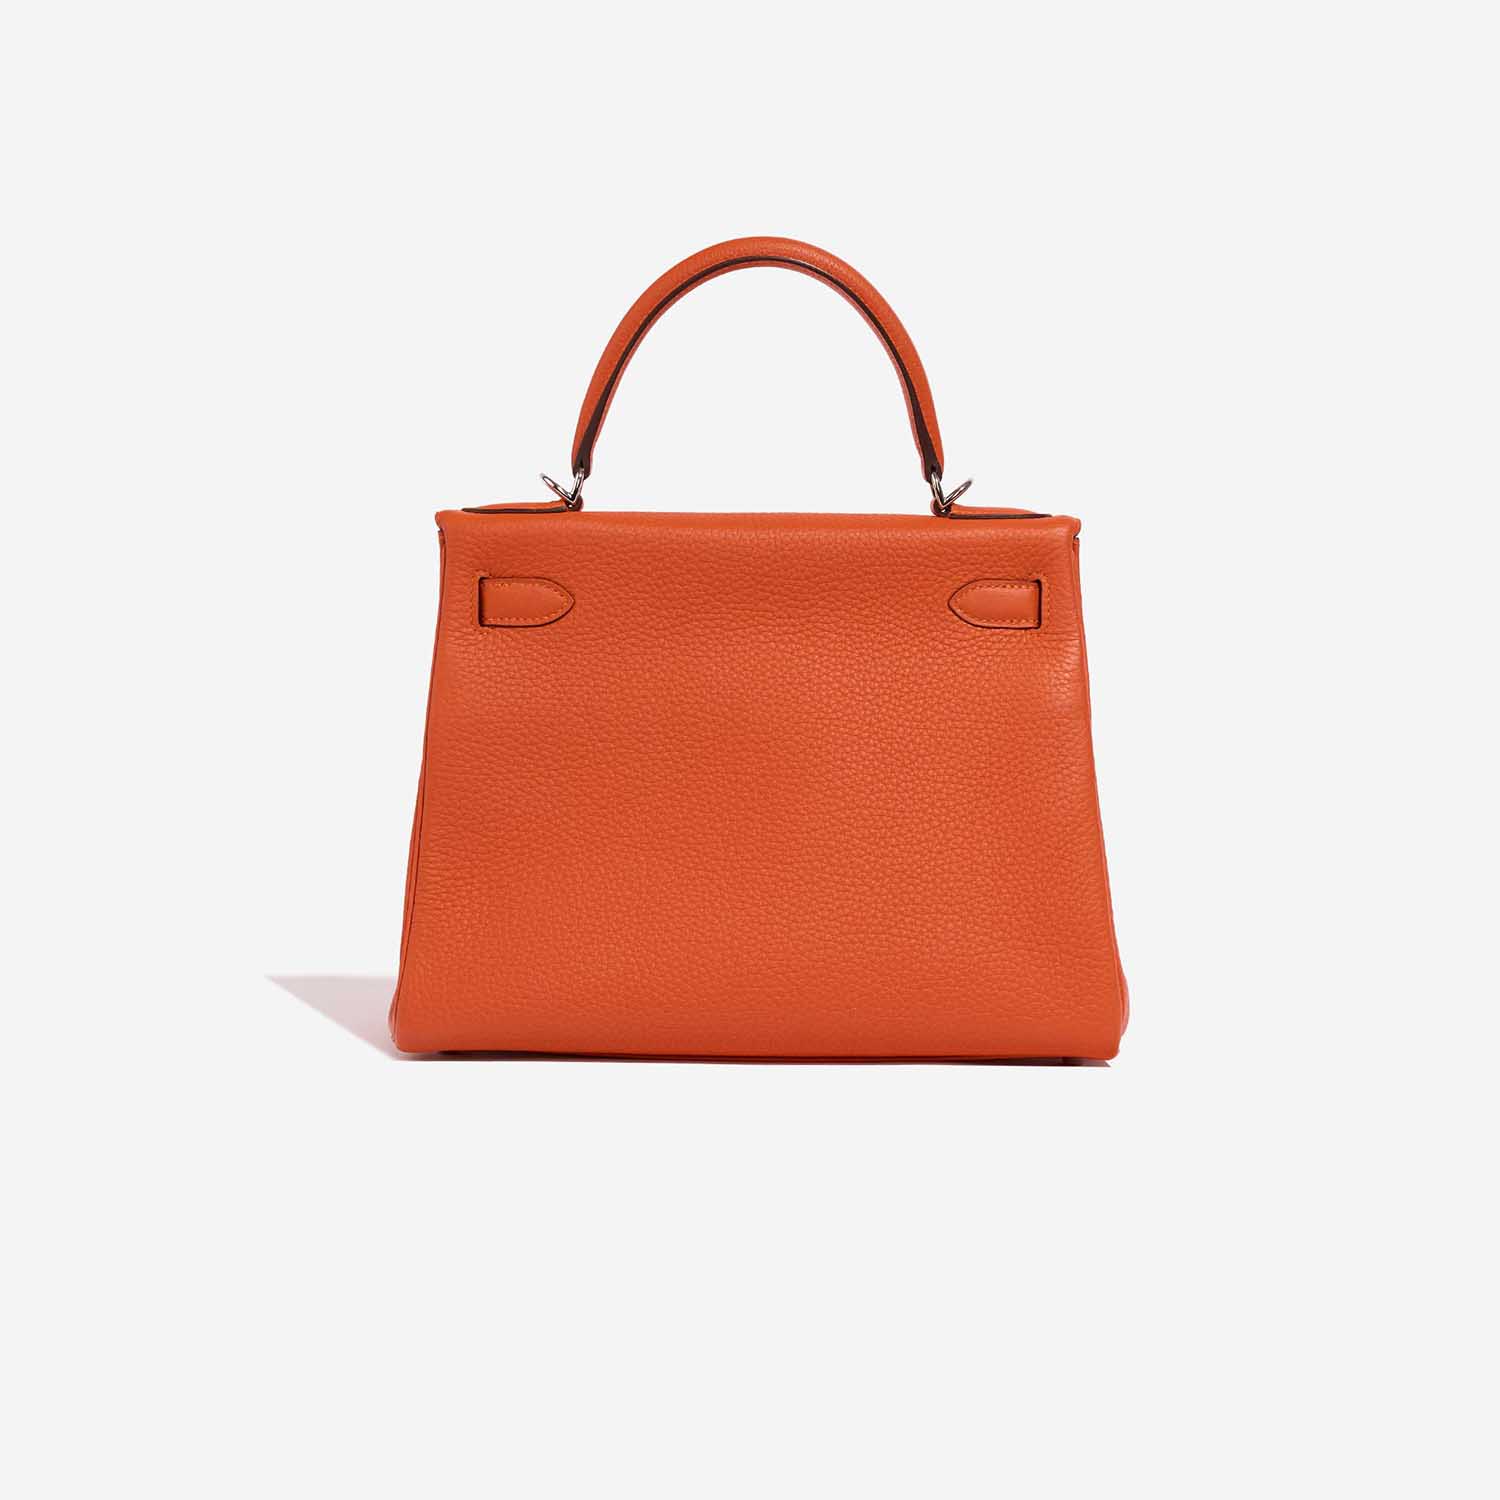 Hermès Kelly 28 Feu Back | Verkaufen Sie Ihre Designertasche auf Saclab.com